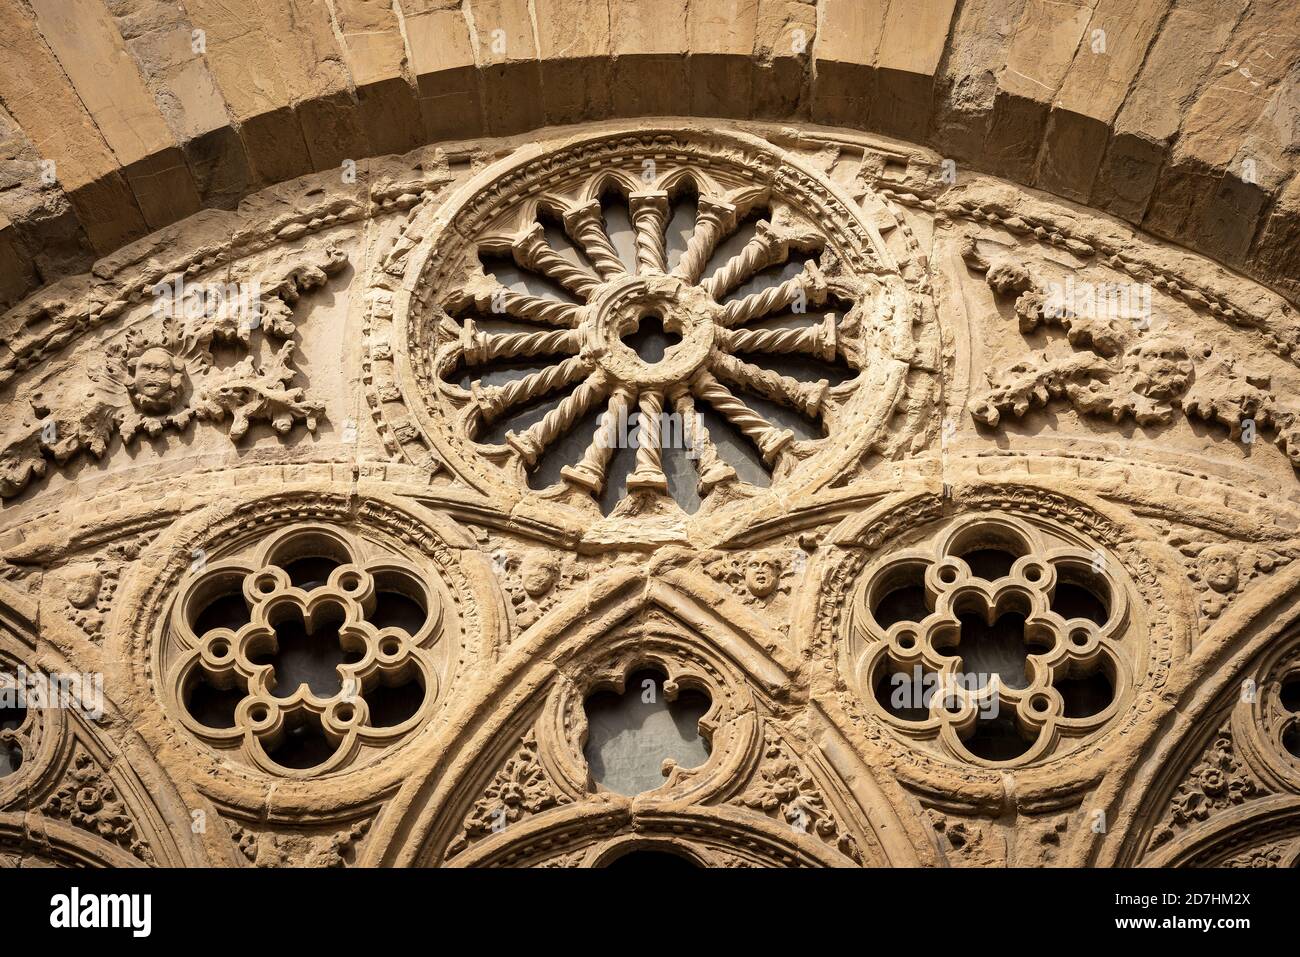 Détail architectural de l'église d'Orsanmichele de style gothique (1337-1380) dans le centre-ville de Florence. Toscane, Italie, Europe. Banque D'Images